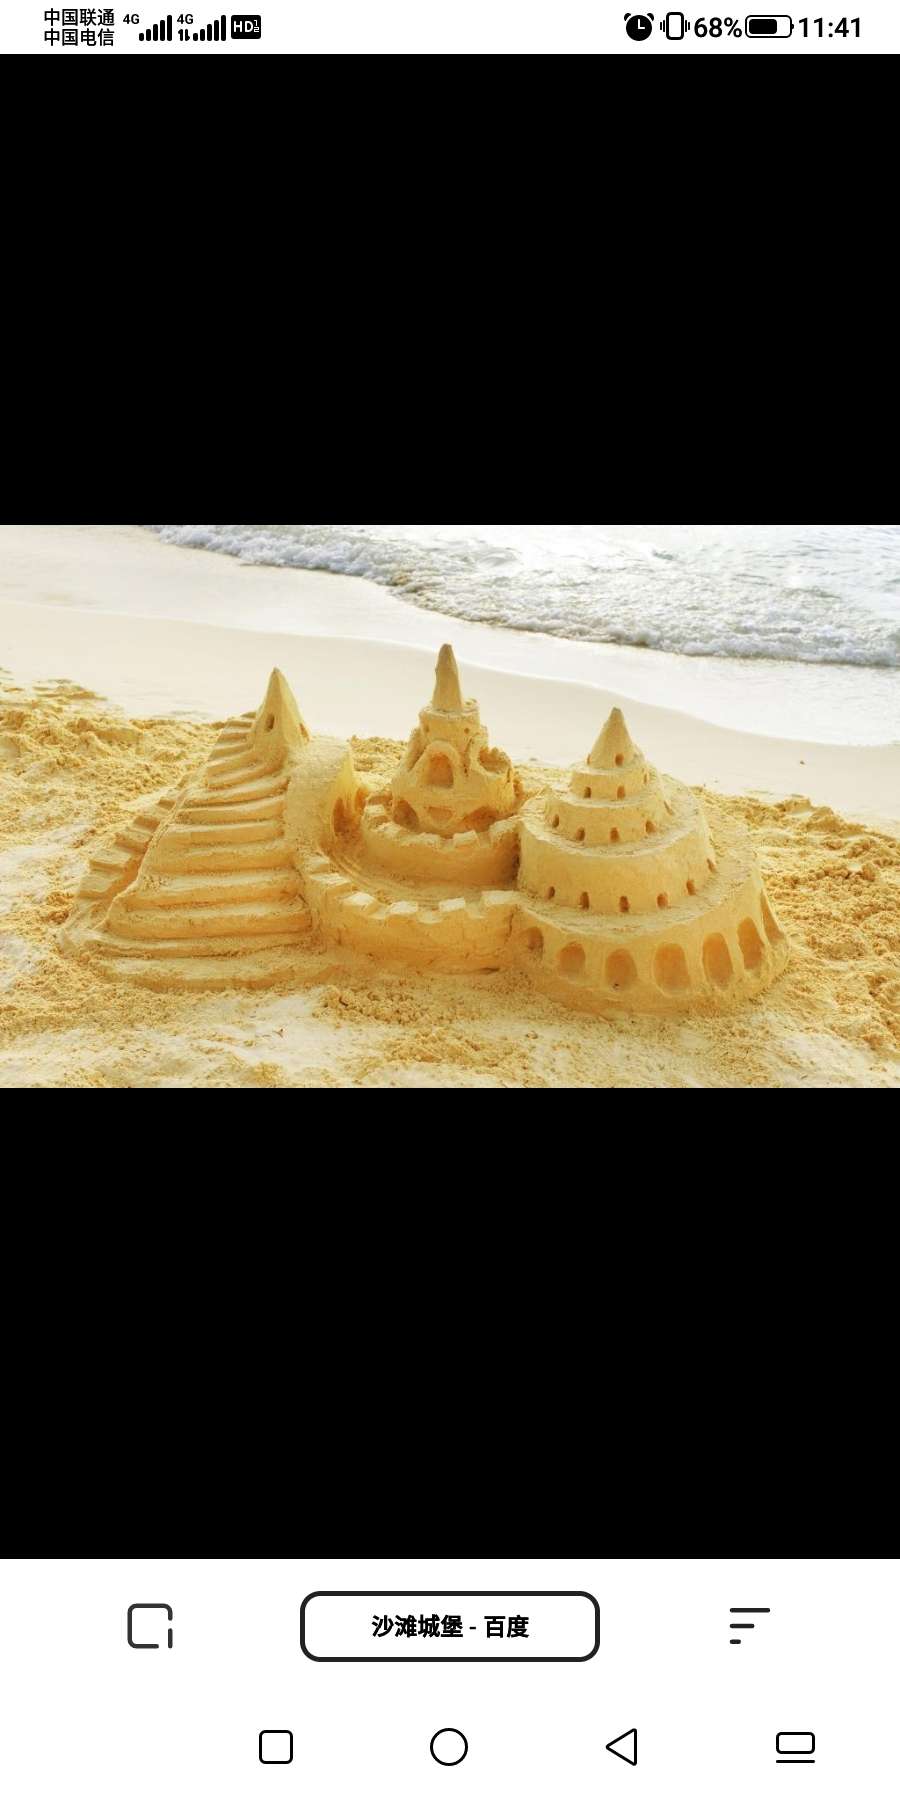 金灯剑客 的想法: 如同在海边的沙滩上用沙子堆房屋,一边堆… 